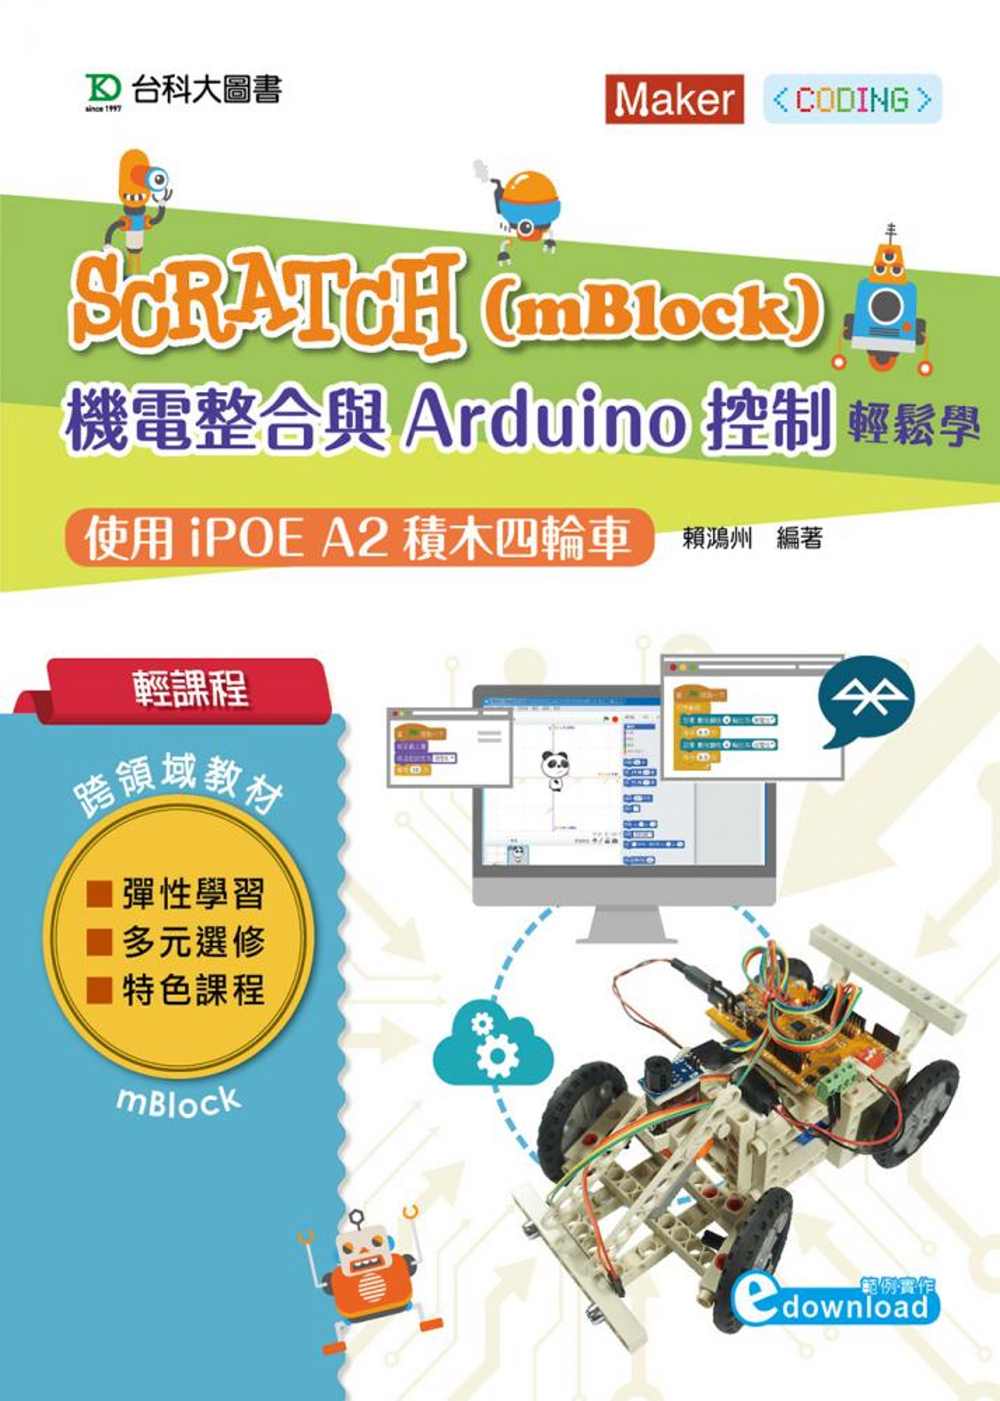 輕課程 Scratch(mBlock)機電整合與Arduino控制輕鬆學：使用iPOE A2積木四輪車